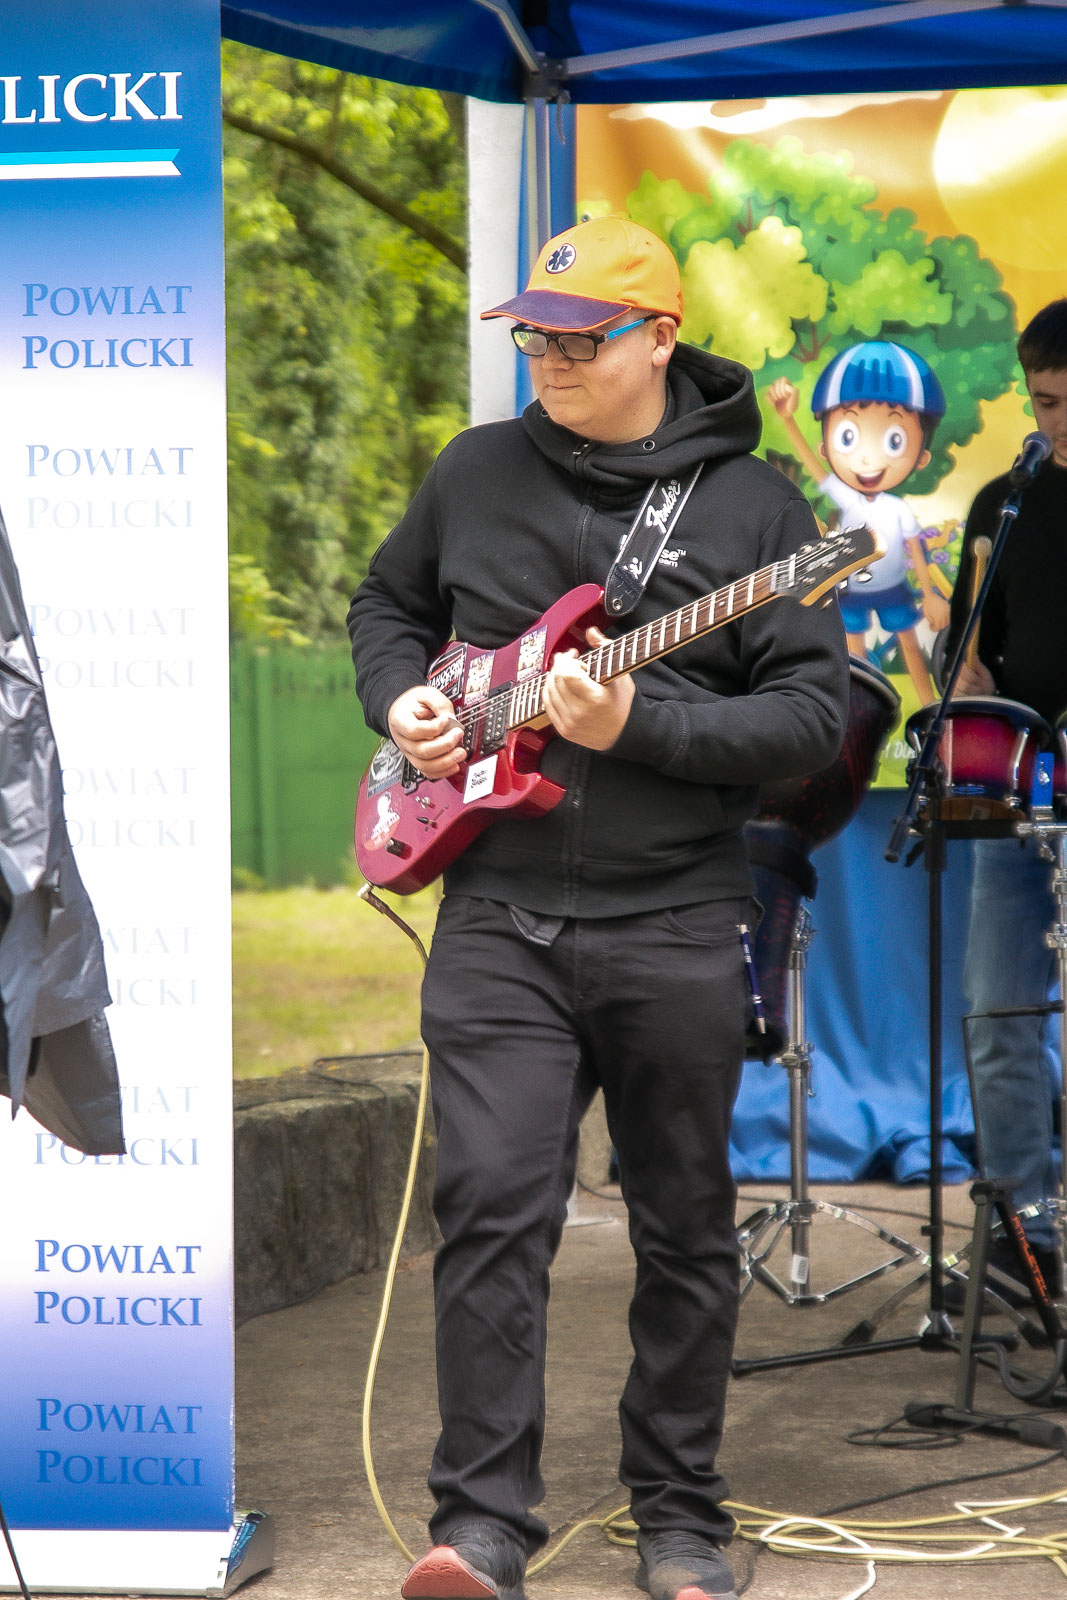 Mężczyzna gra na czerwonej gitarze elektrycznej, w tle widoczna jest ścianka Powiatu Polickiego